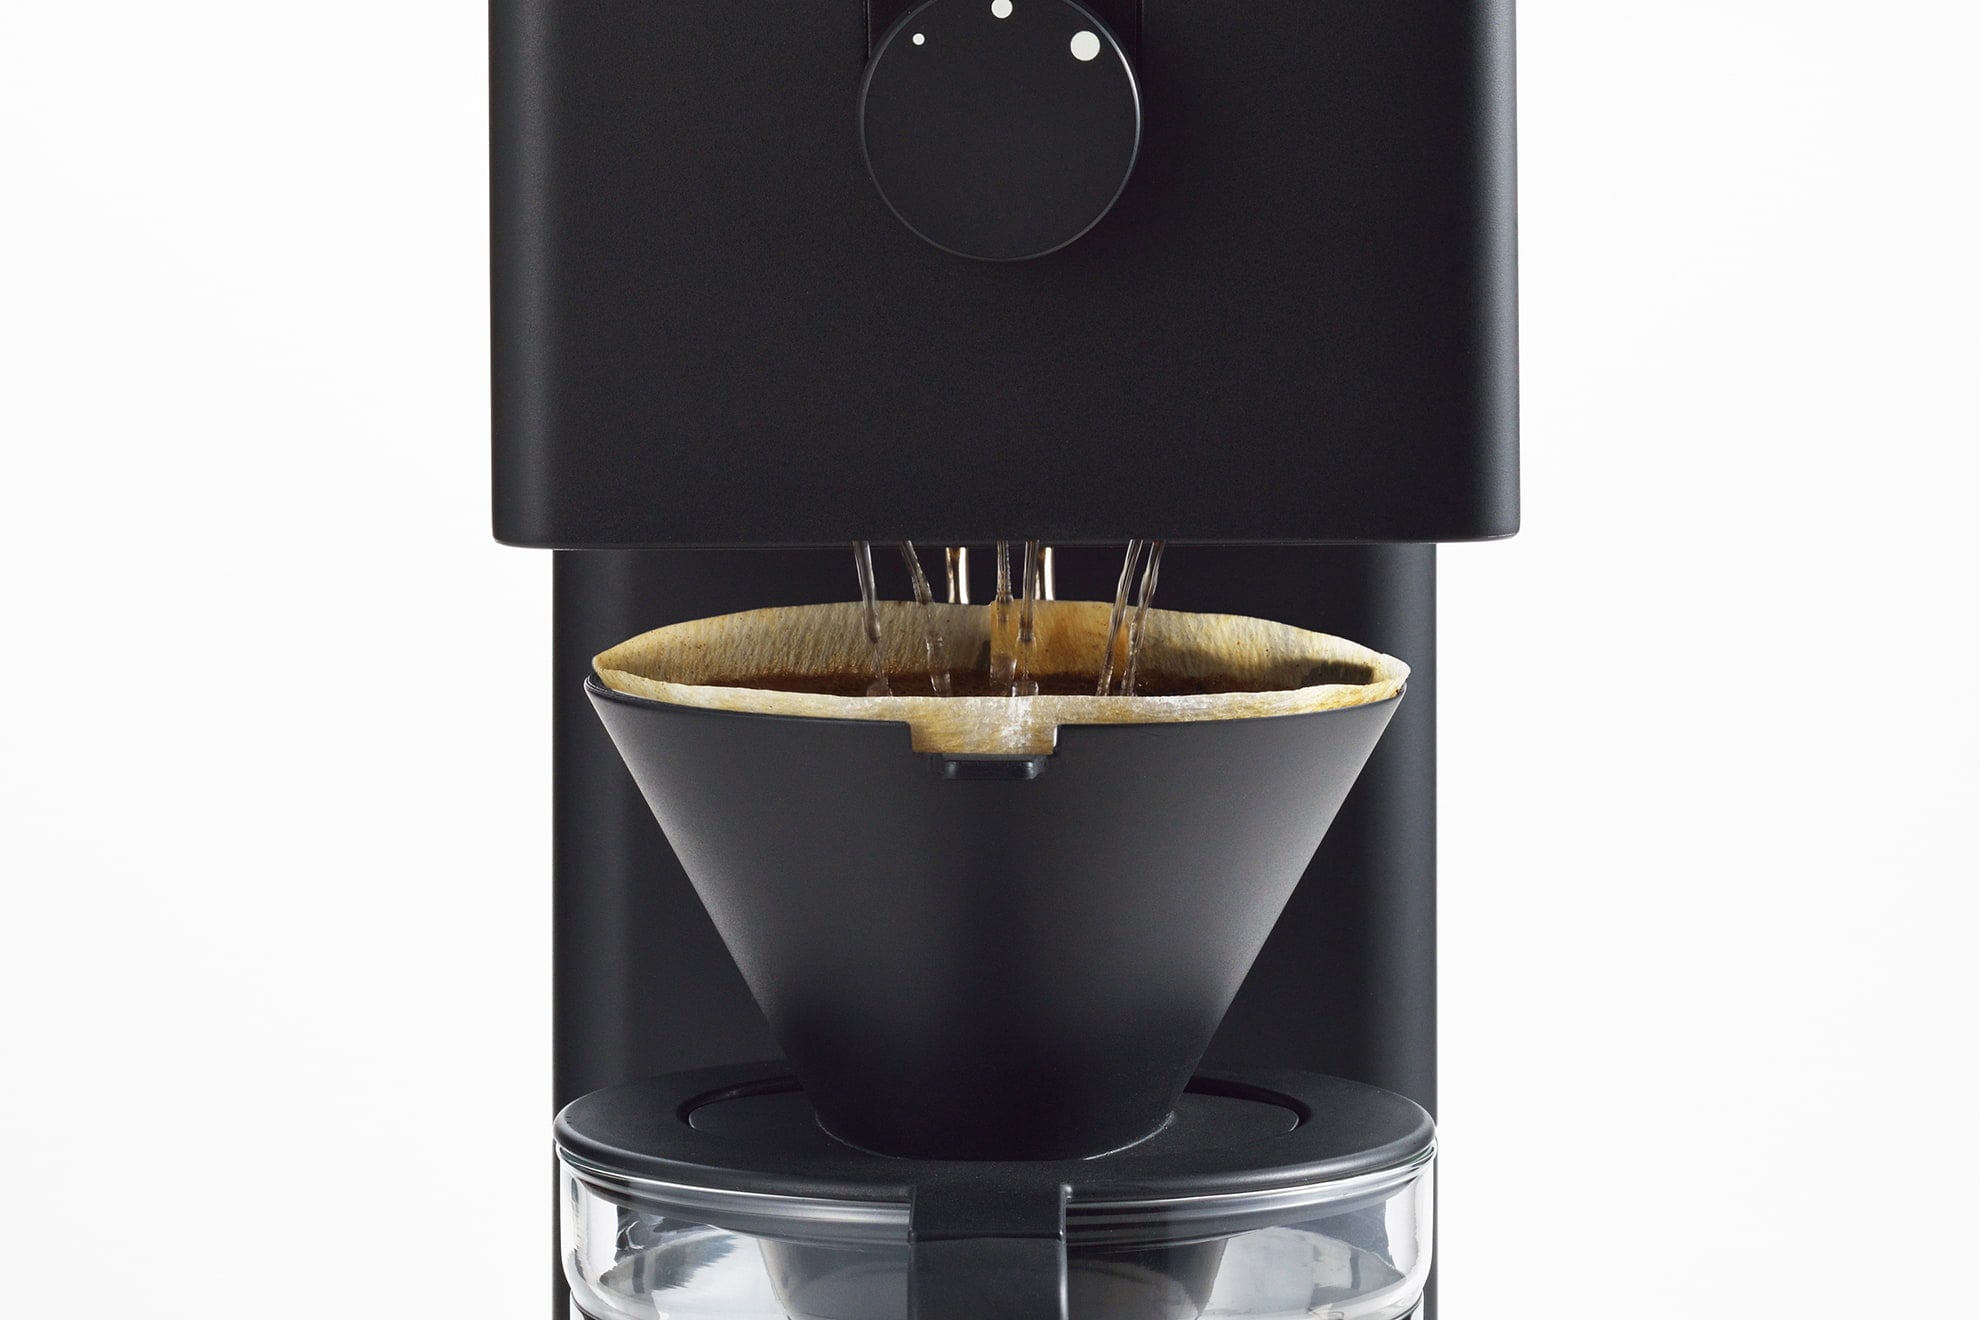 新商品通販 ツインバードCM-D465B全自動コーヒーメーカー6カップ用900mlブラックミル付き コーヒーメーカー